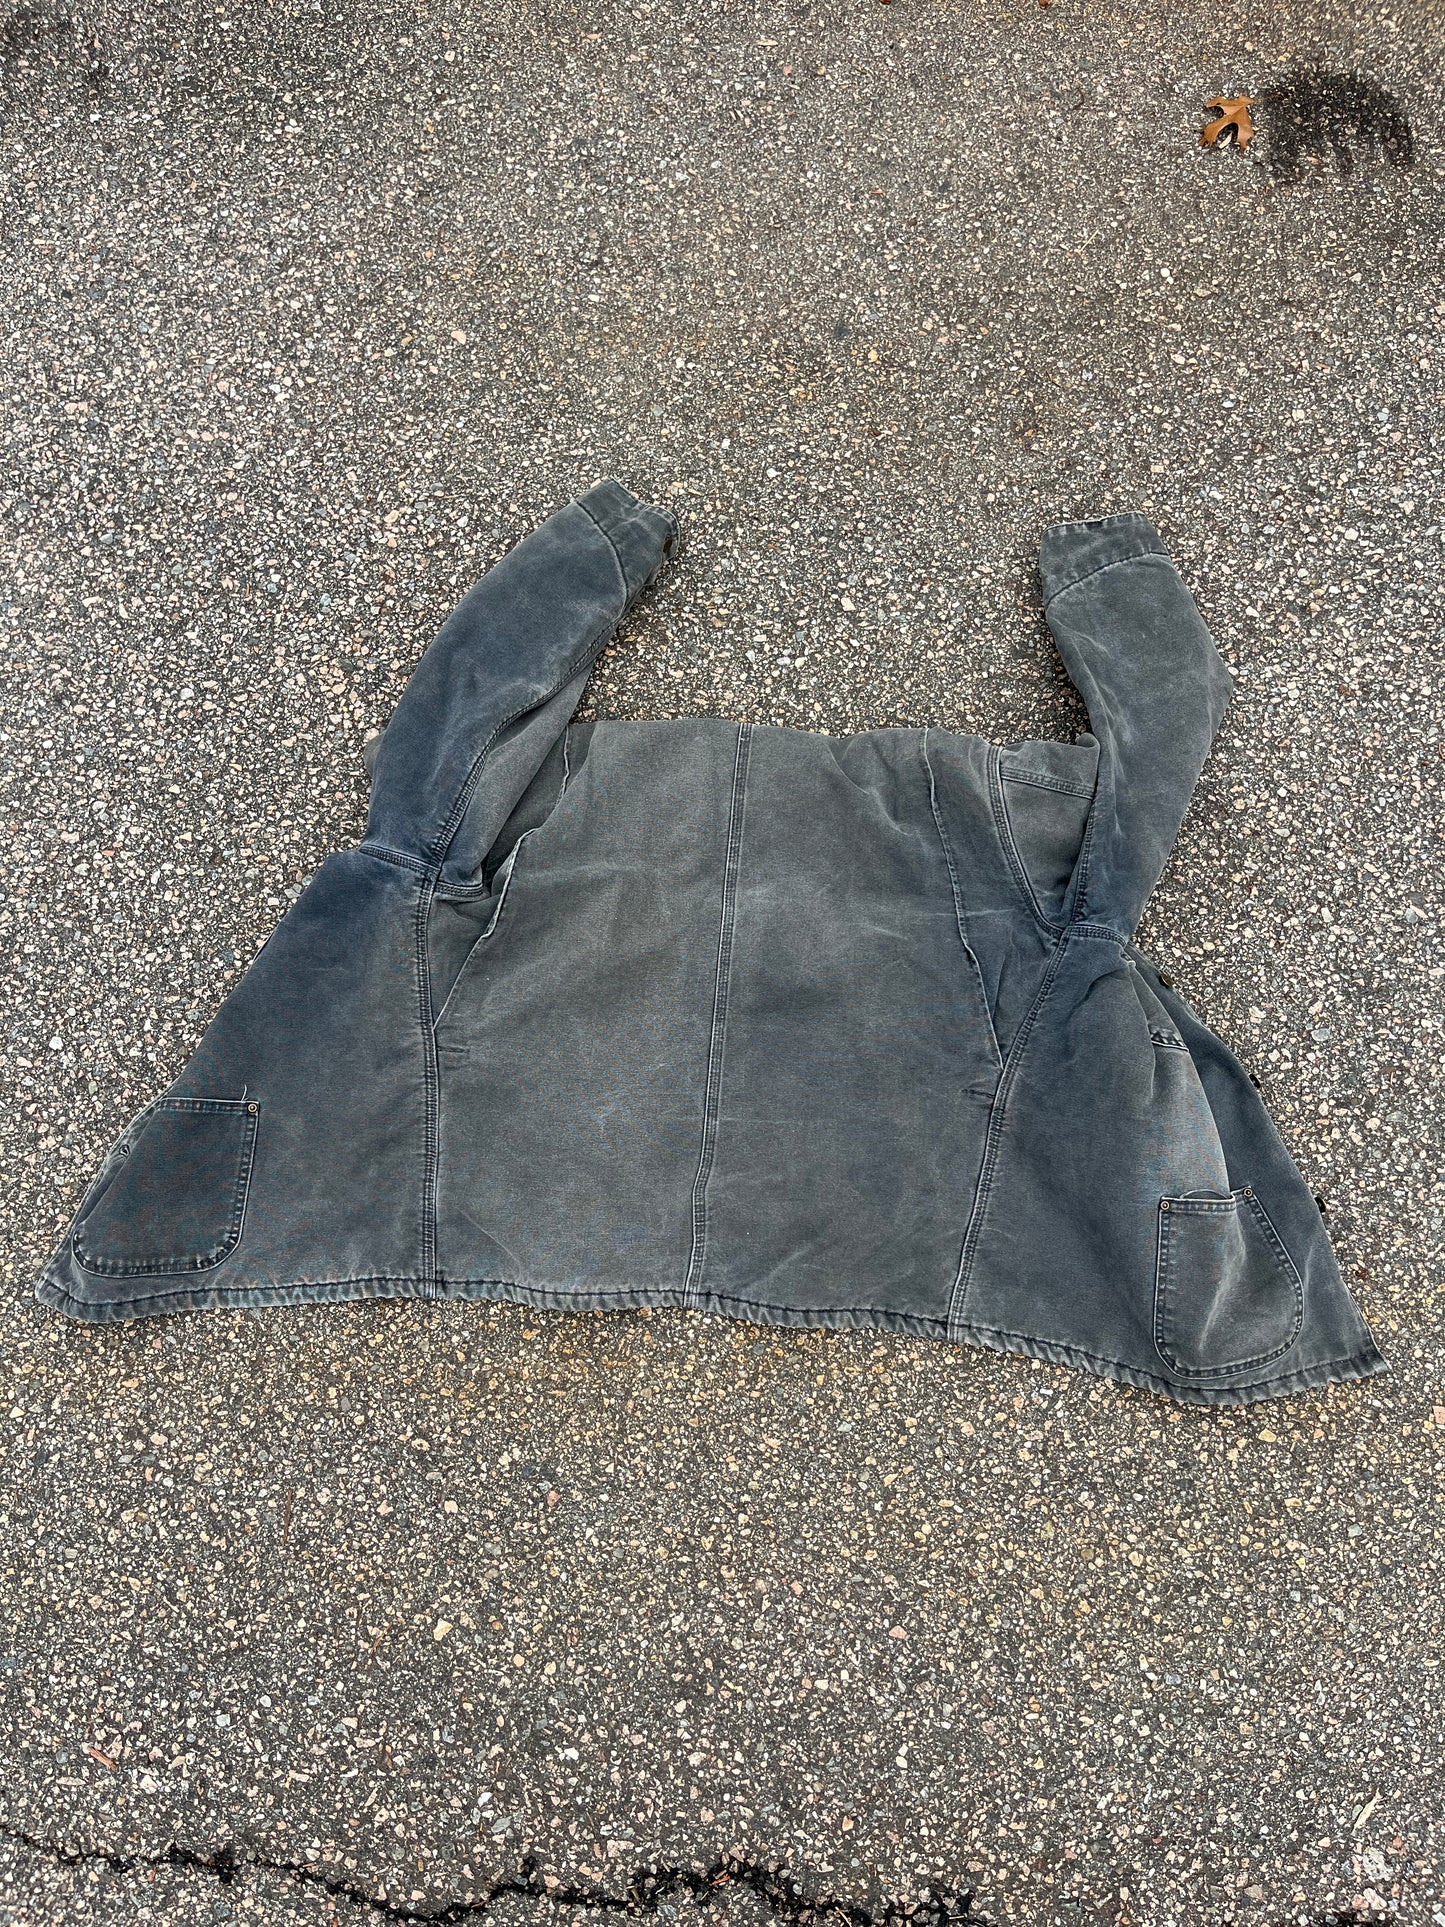 Faded Petrol Blue Carhartt Chore Jacket - XL